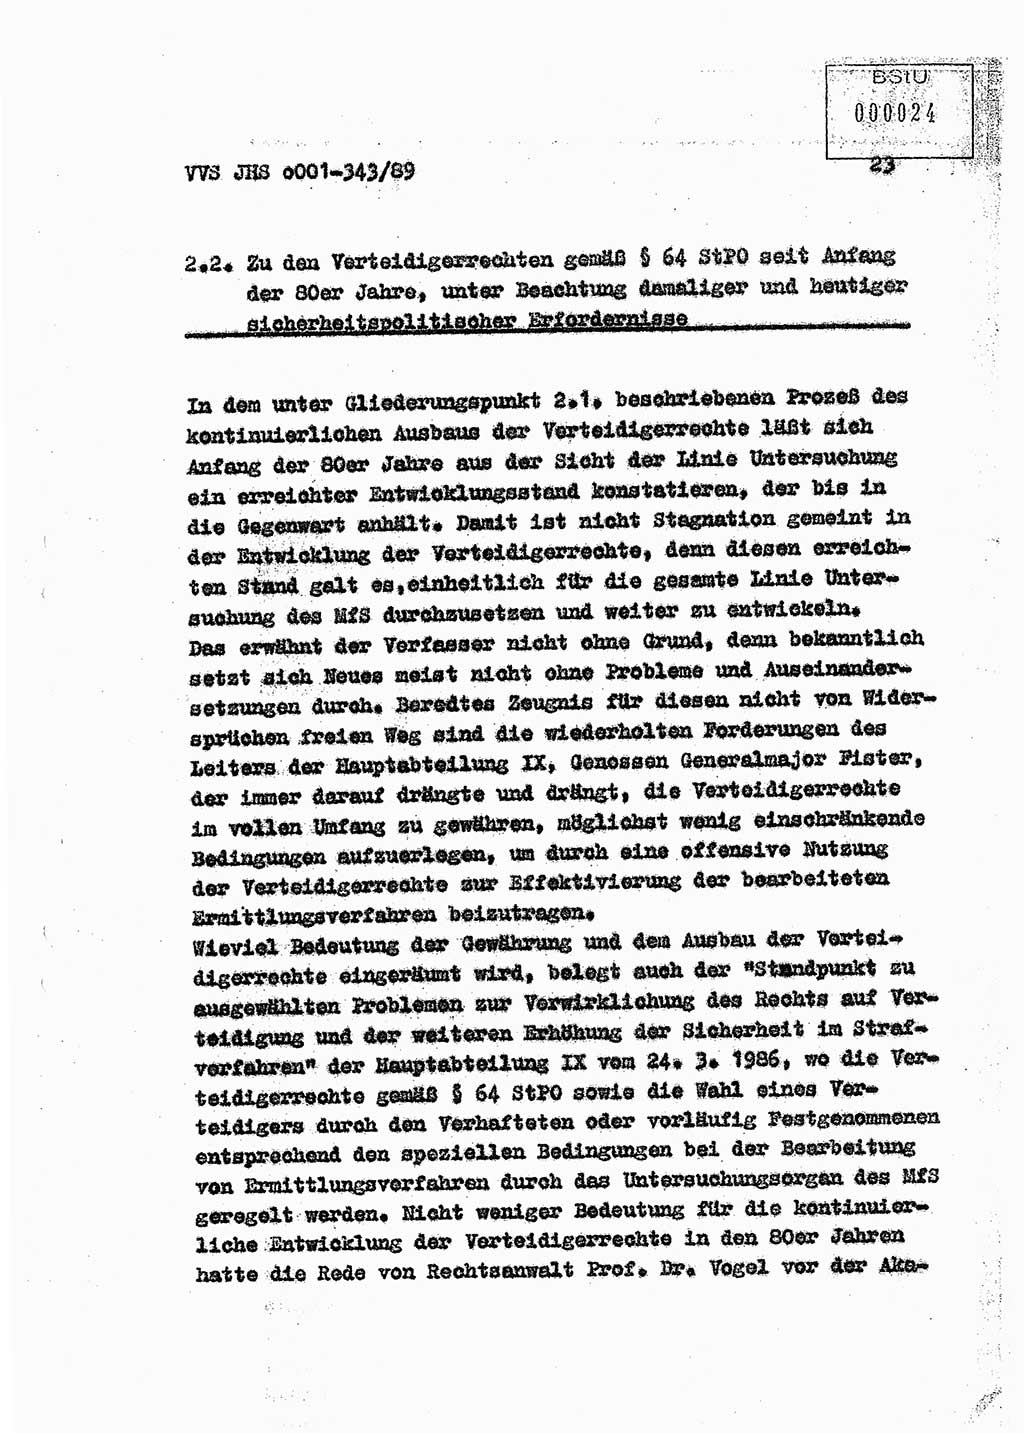 Diplomarbeit Offiziersschüler Axel Henschke (HA Ⅸ/9), Ministerium für Staatssicherheit (MfS) [Deutsche Demokratische Republik (DDR)], Juristische Hochschule (JHS), Vertrauliche Verschlußsache (VVS) o001-343/89, Potsdam 1989, Seite 23 (Dipl.-Arb. MfS DDR JHS VVS o001-343/89 1989, S. 23)